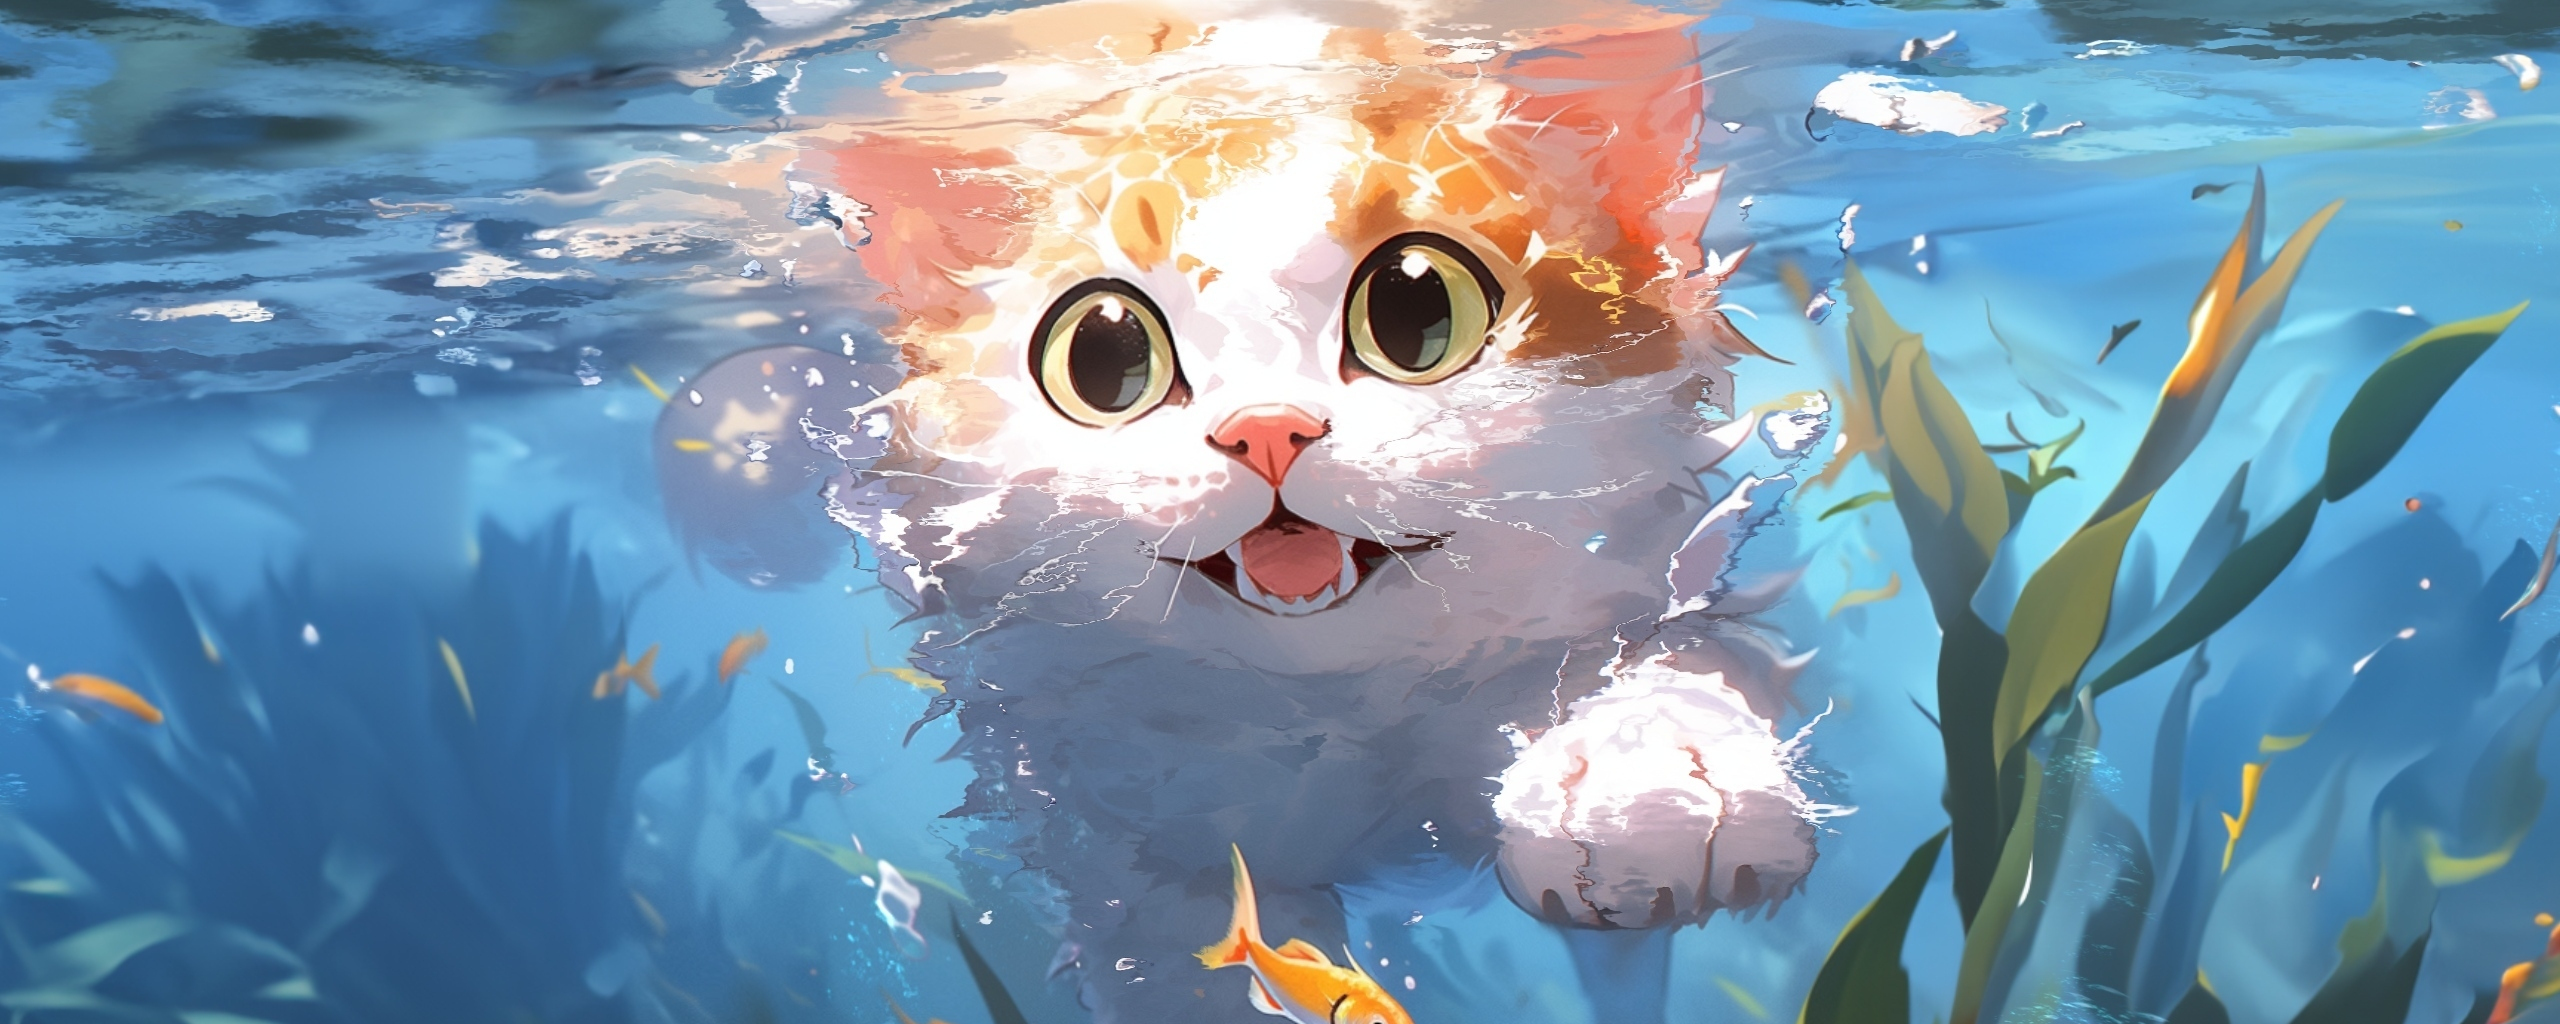 Cute kitten, swim underwater, art, 2560x1024 wallpaper